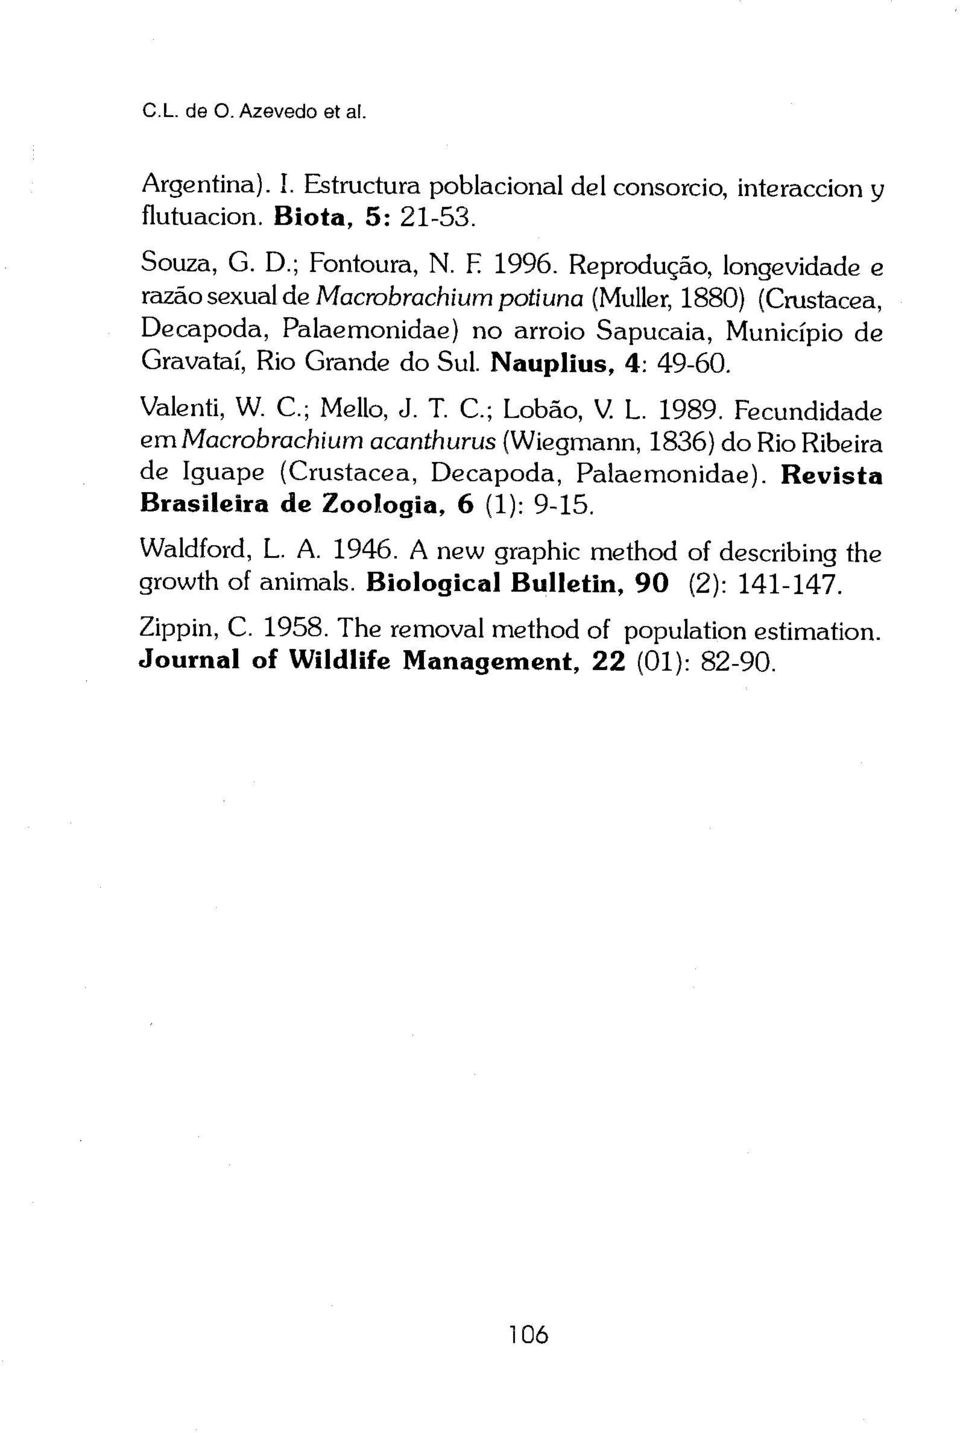 Valenti, W. C.; Mello, J. T. C.; Lobao, V. L. 1989. Fecundidade emmacrobrachium acanthurus (Wiegmann, 1836) do Rio Ribeira de Iguape (Crustacea, Decapoda, Palaemonidae).